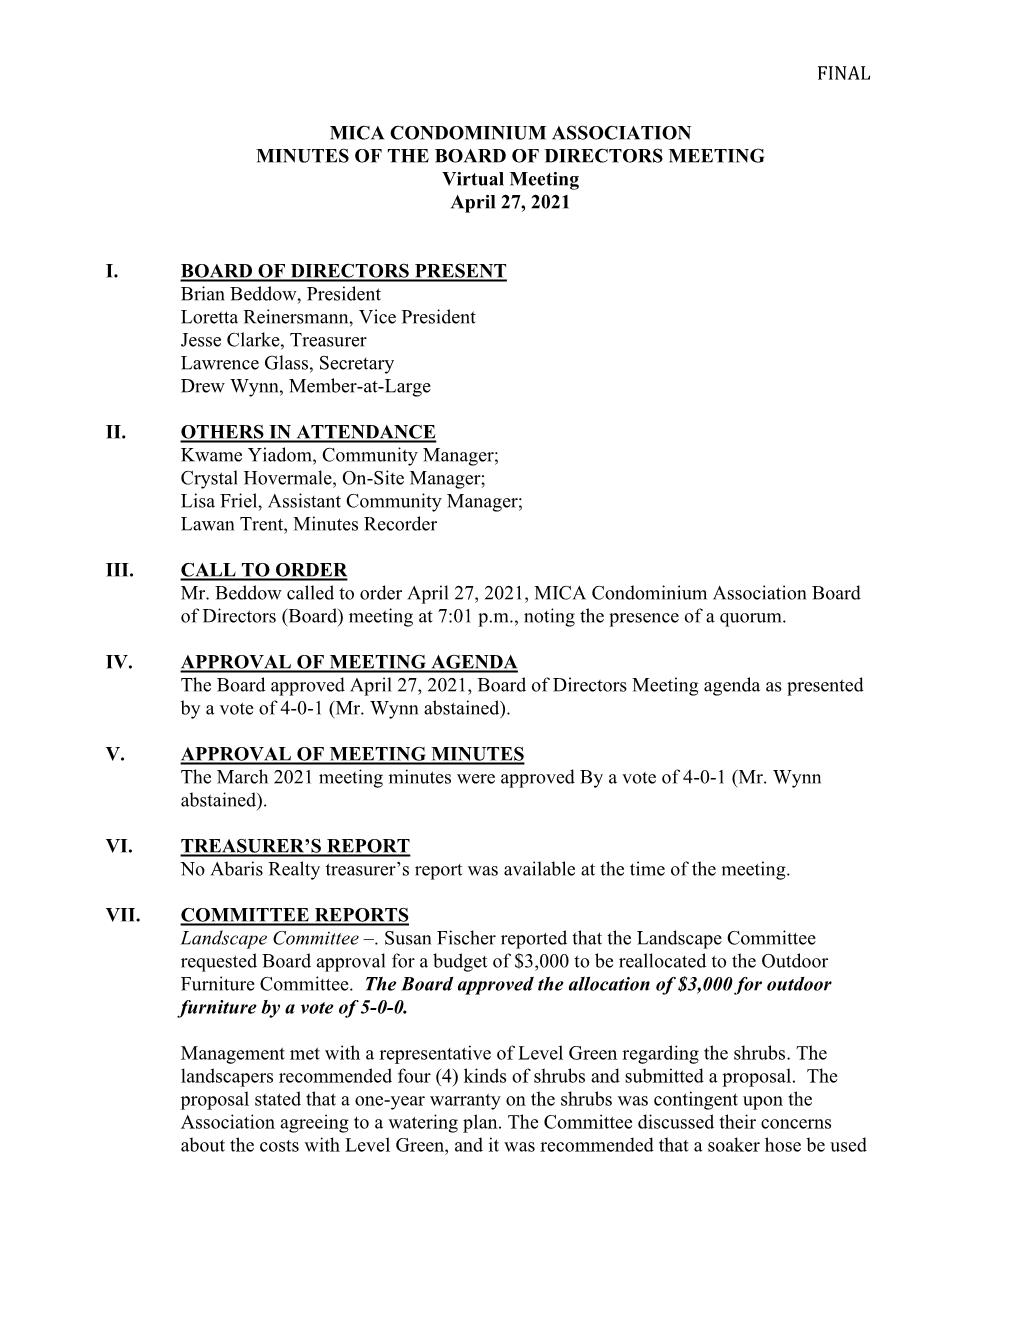 Mica Condominium Association Final Board Meeting Minutes-LSR